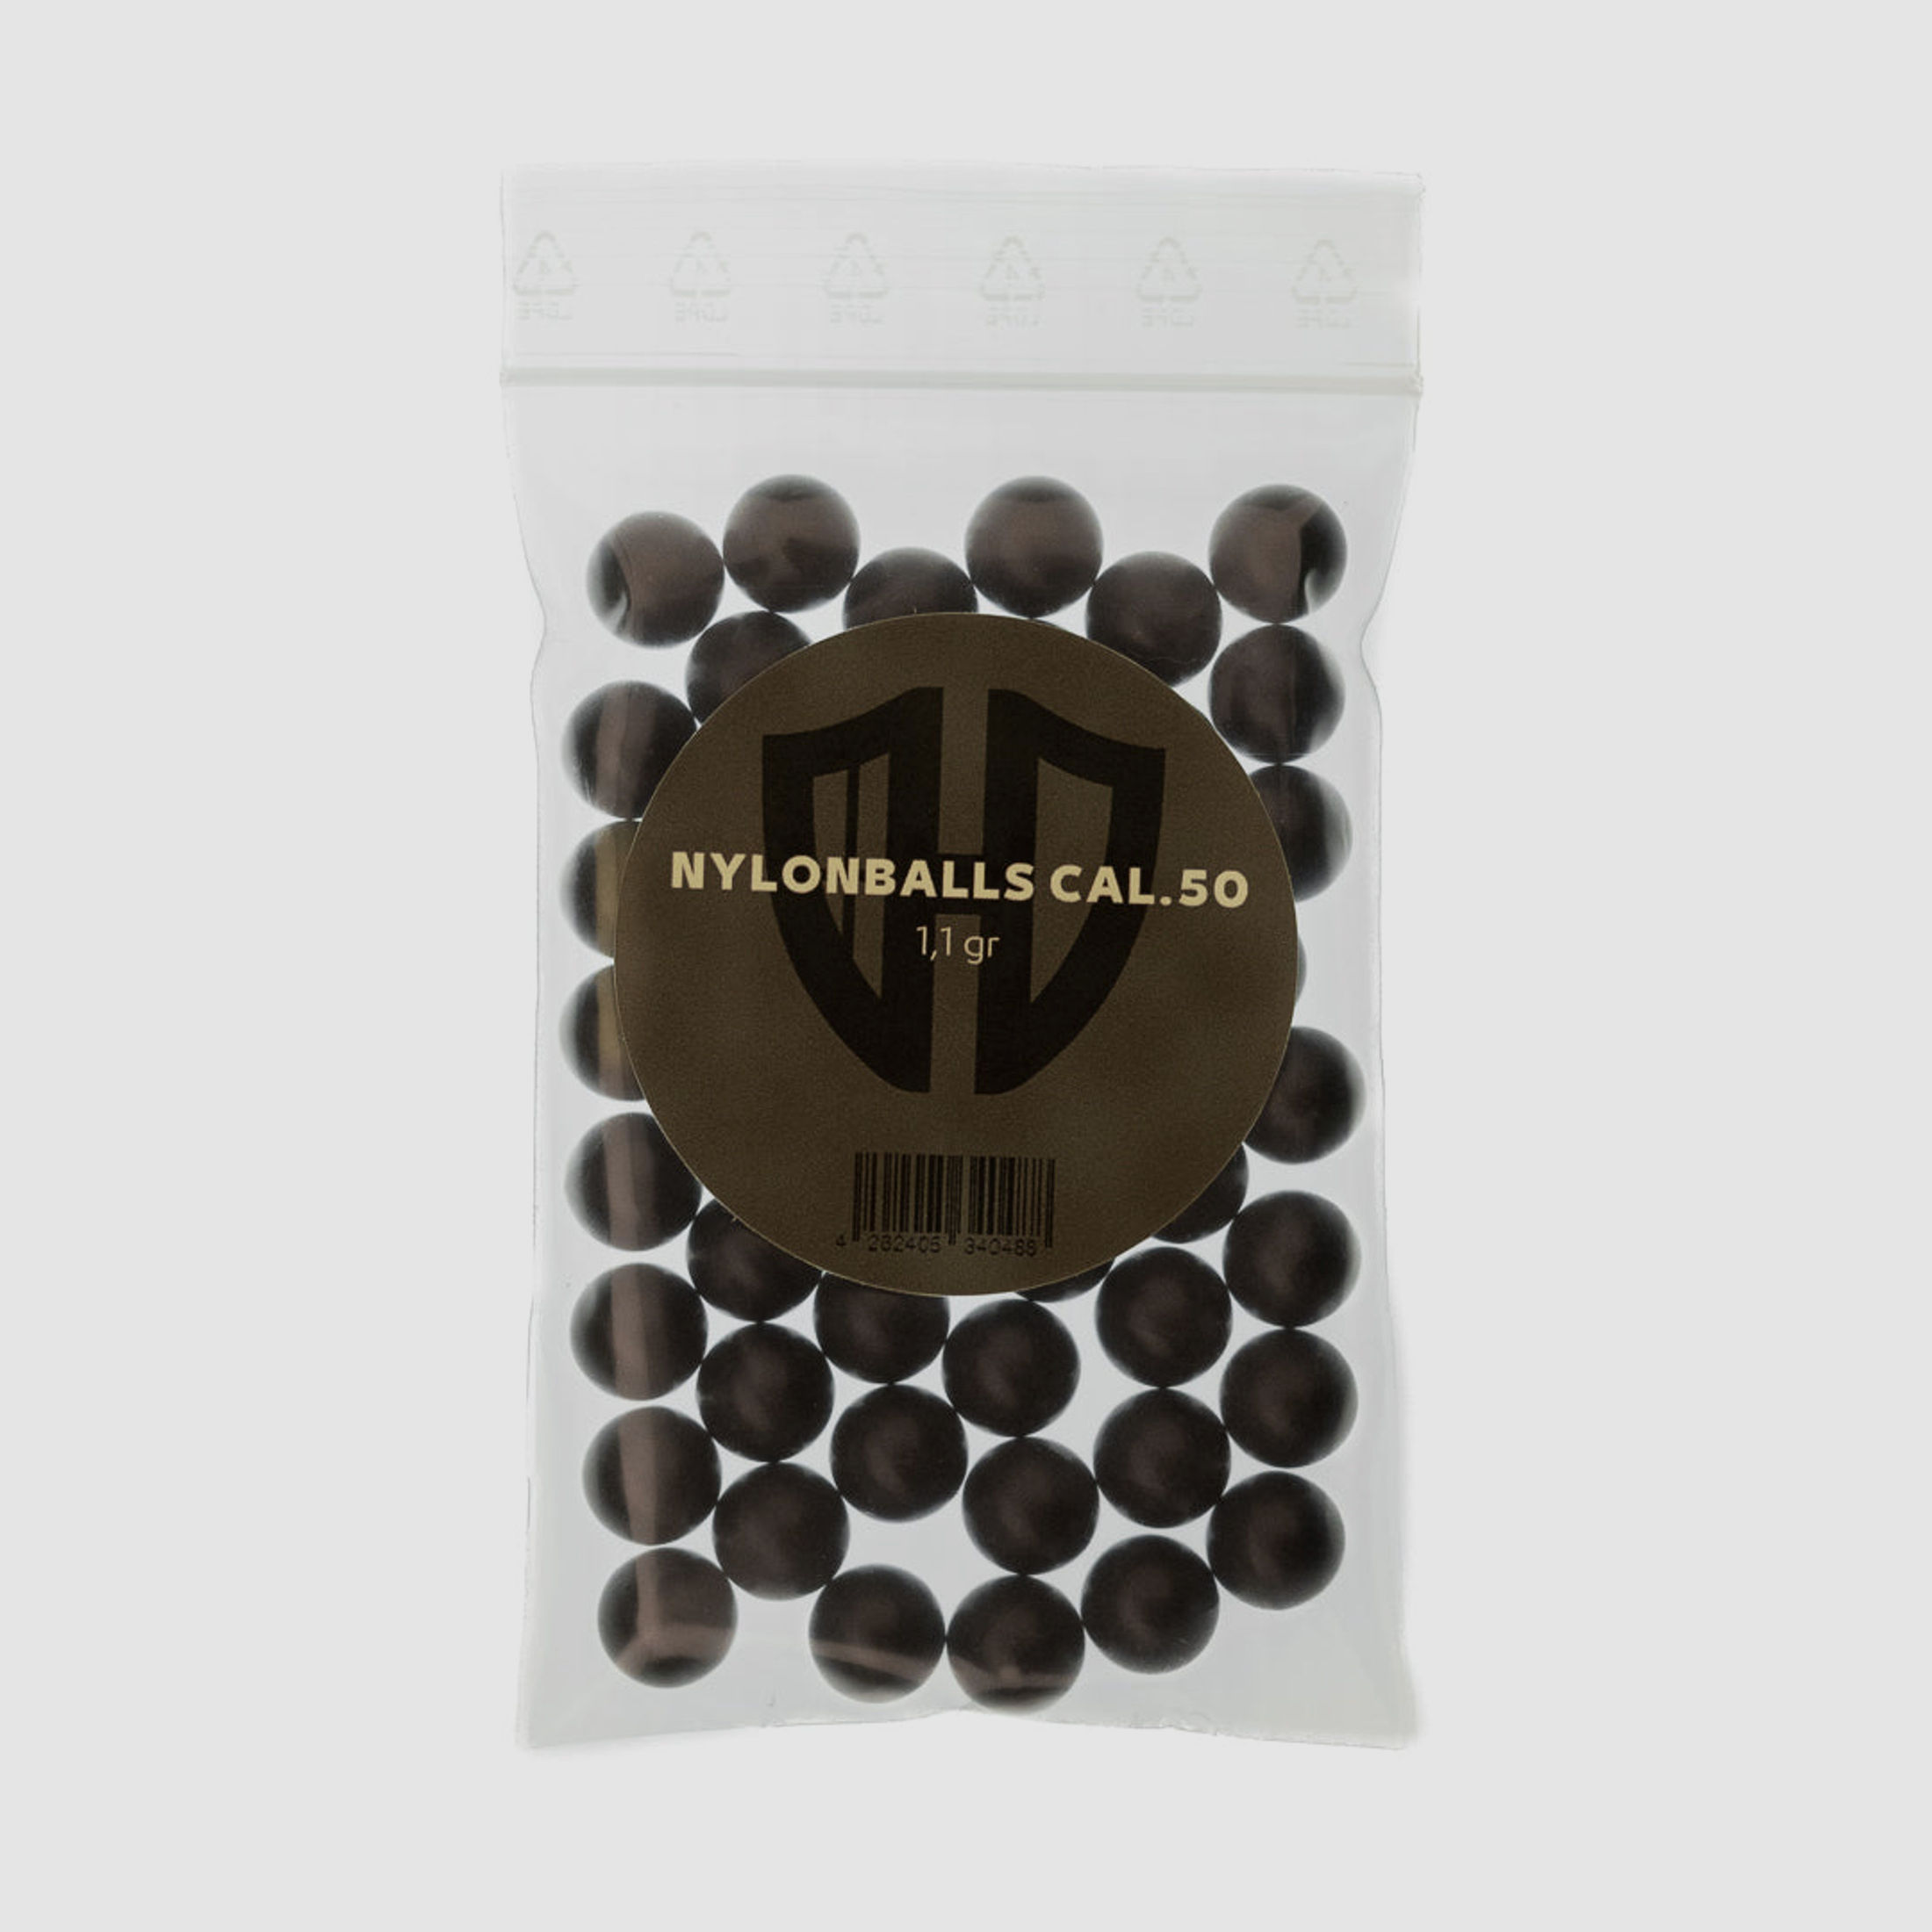 50 x Nylonballs Cal.50 | HDR-50 HDP-50 | Hartkunststoff | 1,1 Gr. | Homedefence